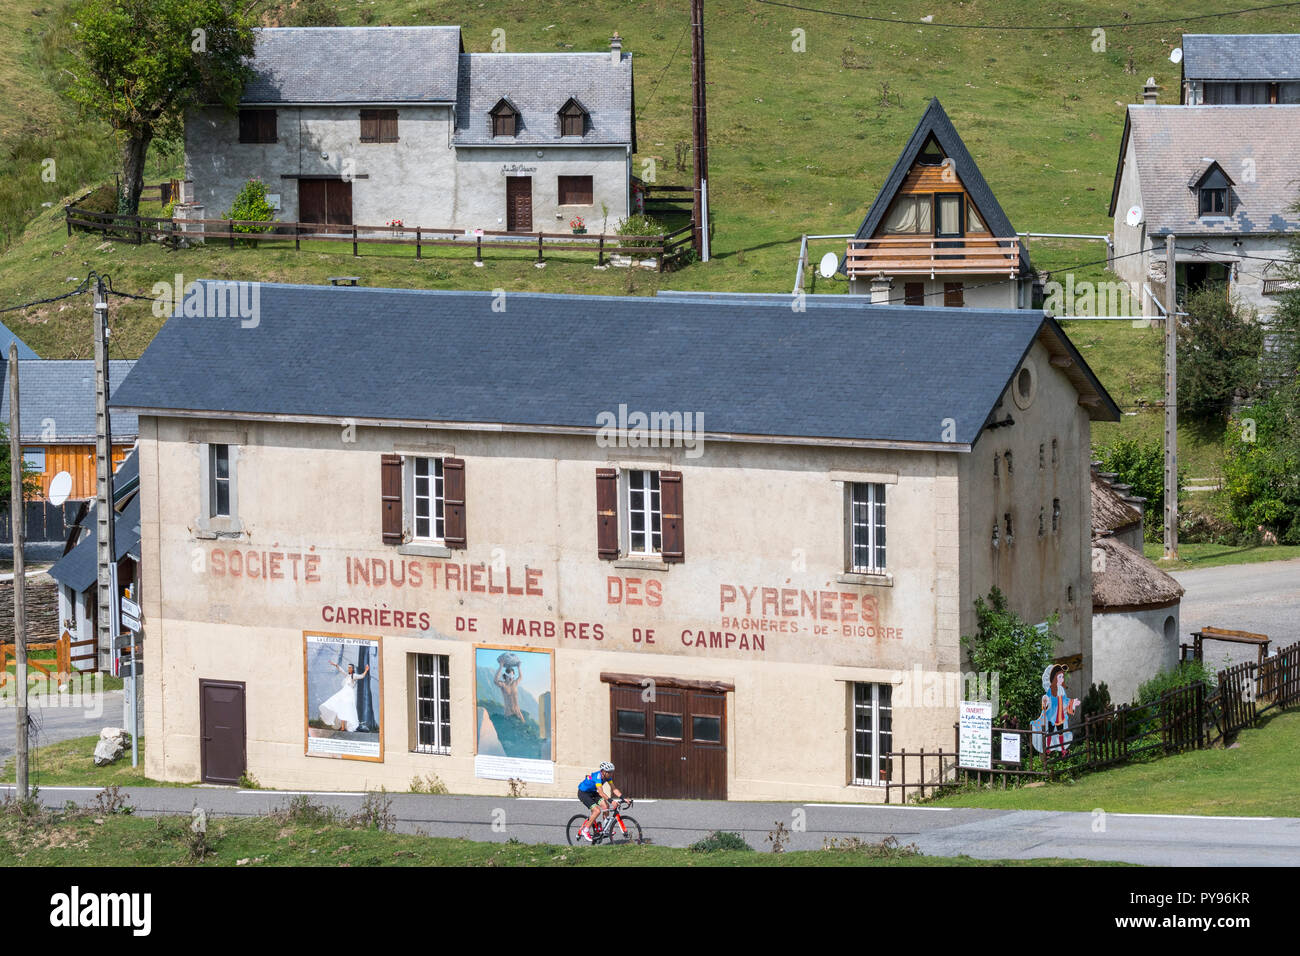 Société Industrielle des Pyrénées / Carrières de Marbres de Campan, marble quarry at Payolle, Haute-Bigorre, Hautes-Pyrénées, France Stock Photo